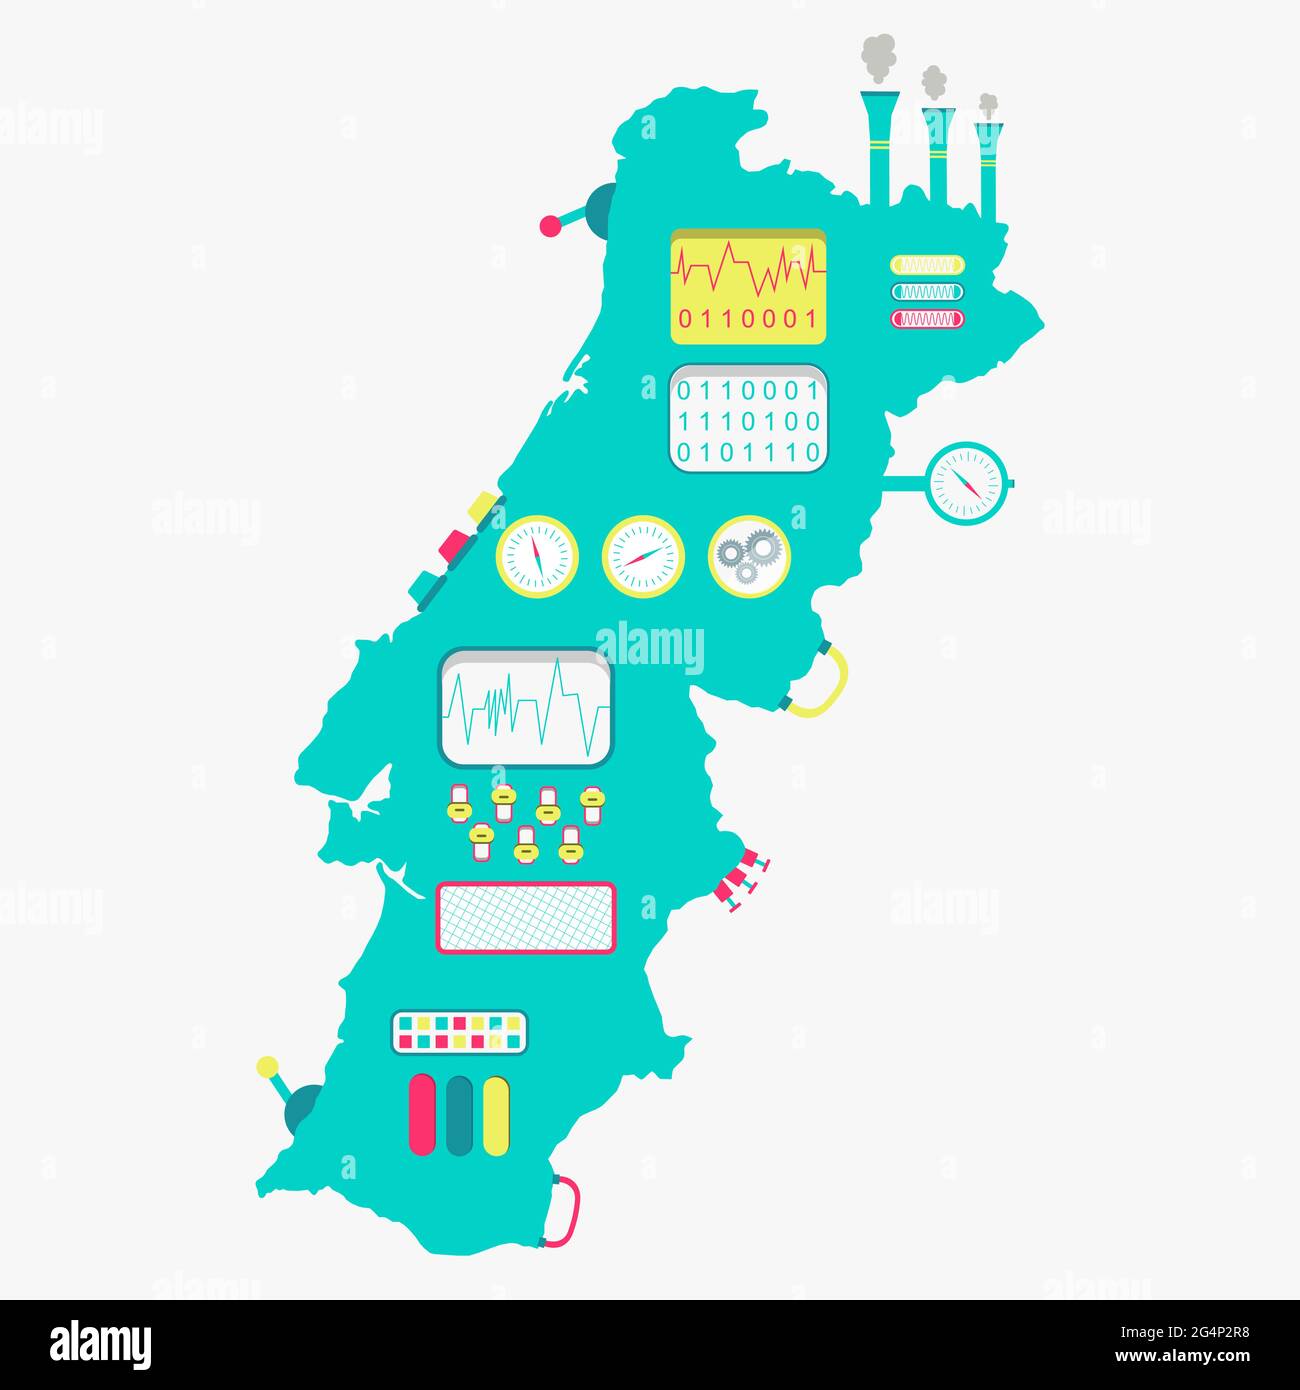 Karte von Portugal wie eine niedliche Maschine mit Knöpfen, Tafeln und Hebeln. Isoliert. Weißer Hintergrund. Stock Vektor